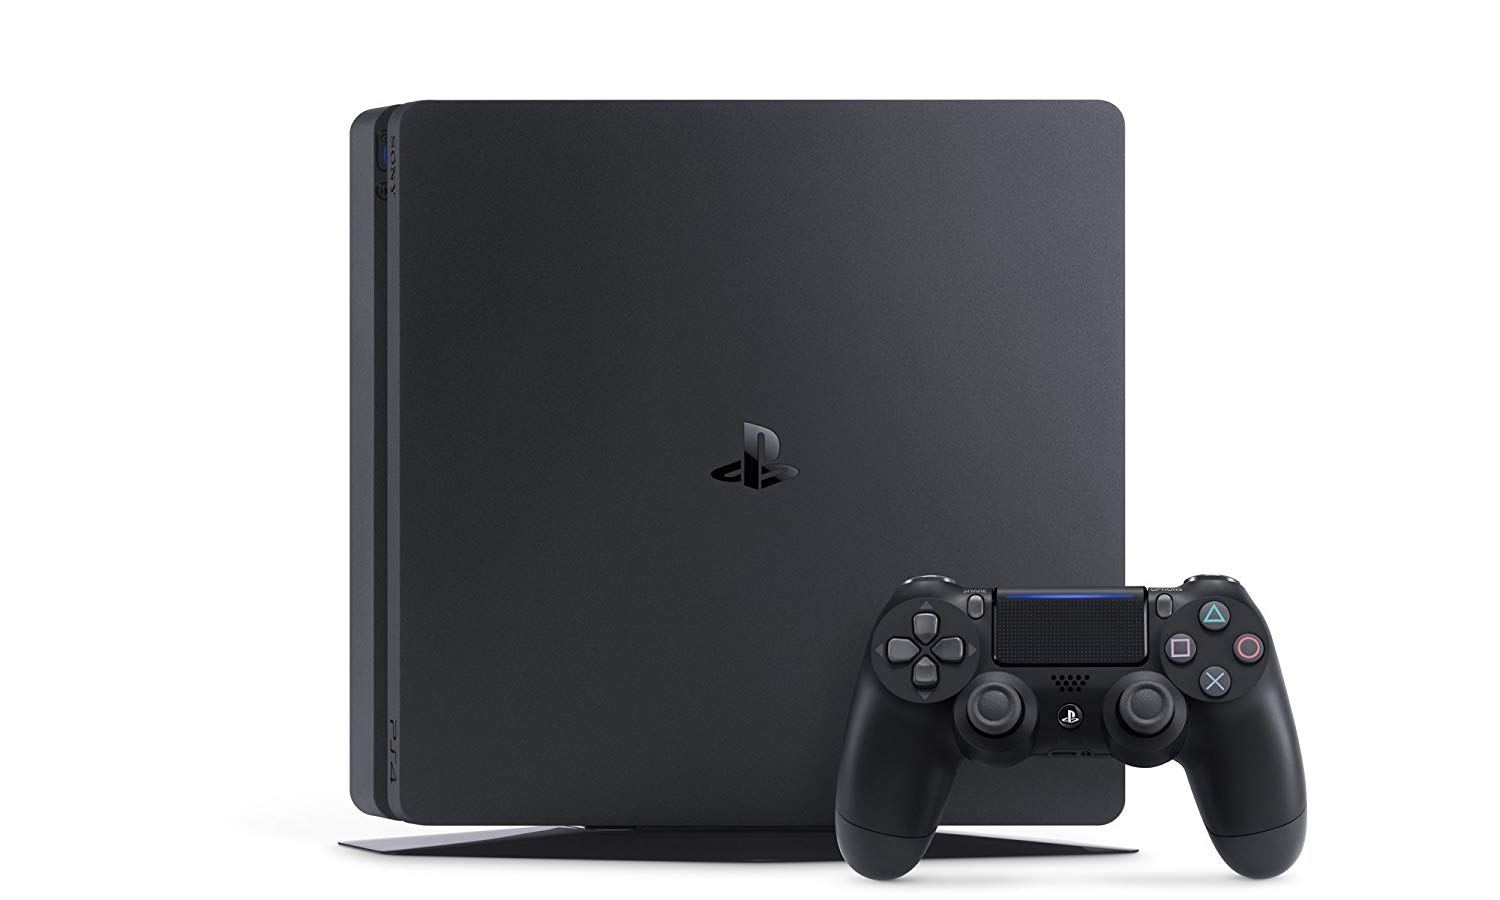 Net sejr tin PlayStation 4 CUH-2200 Series 500GB HDD (Jet Black)